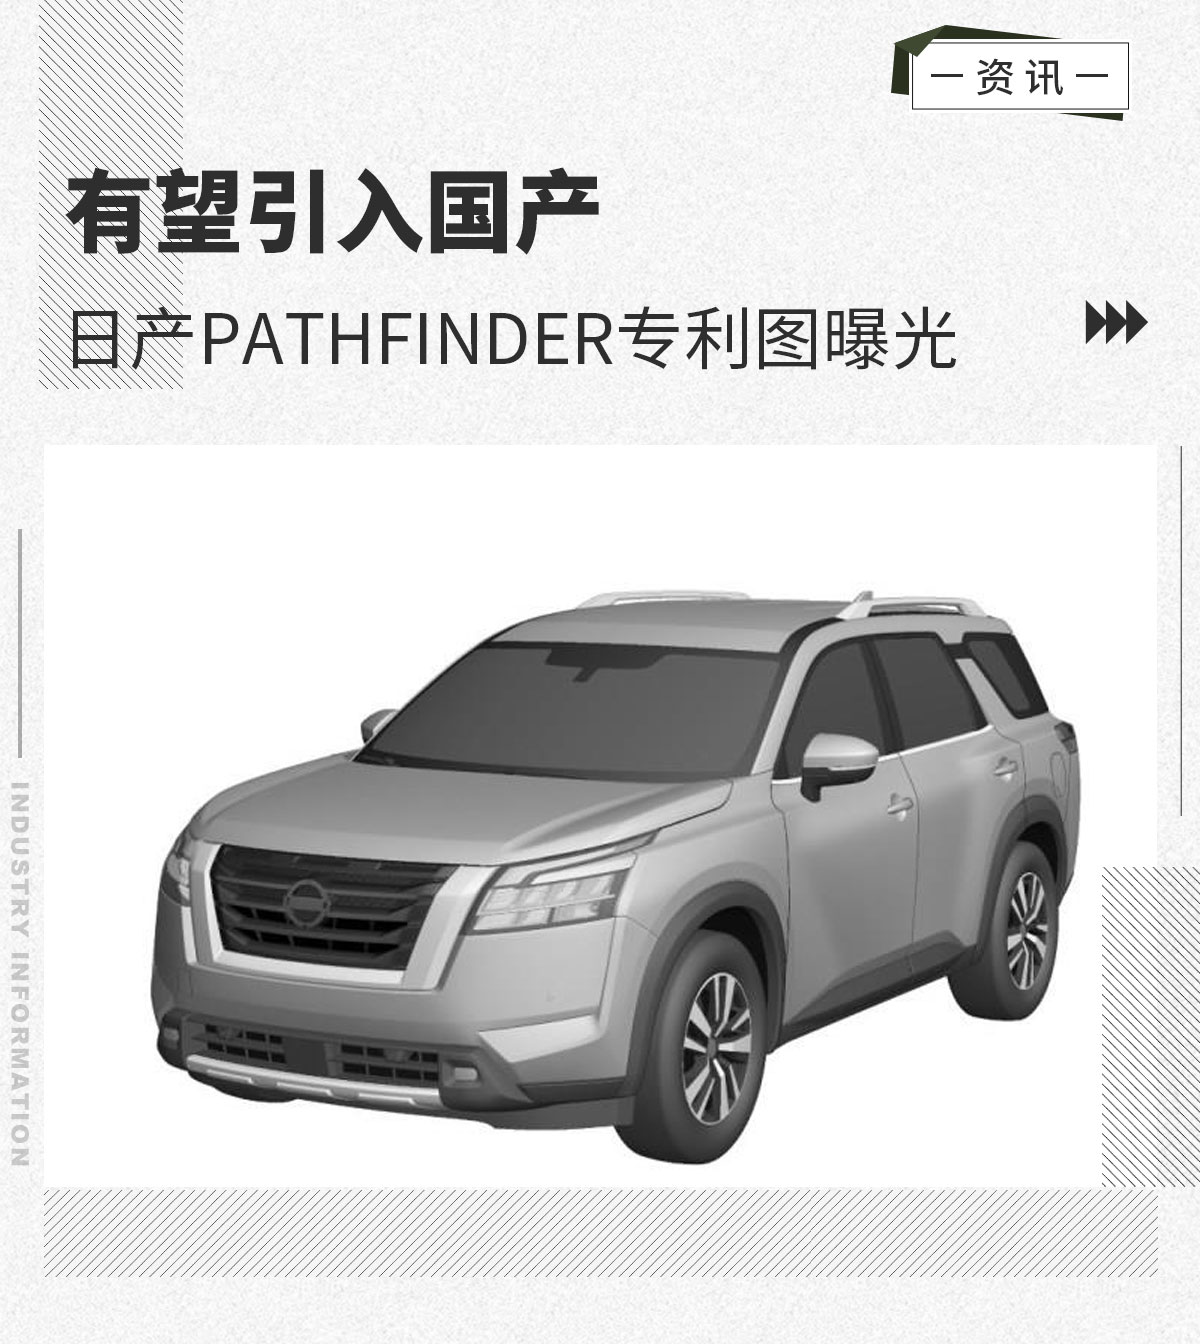 日产Pathfinder专利图曝光 有望引入国产